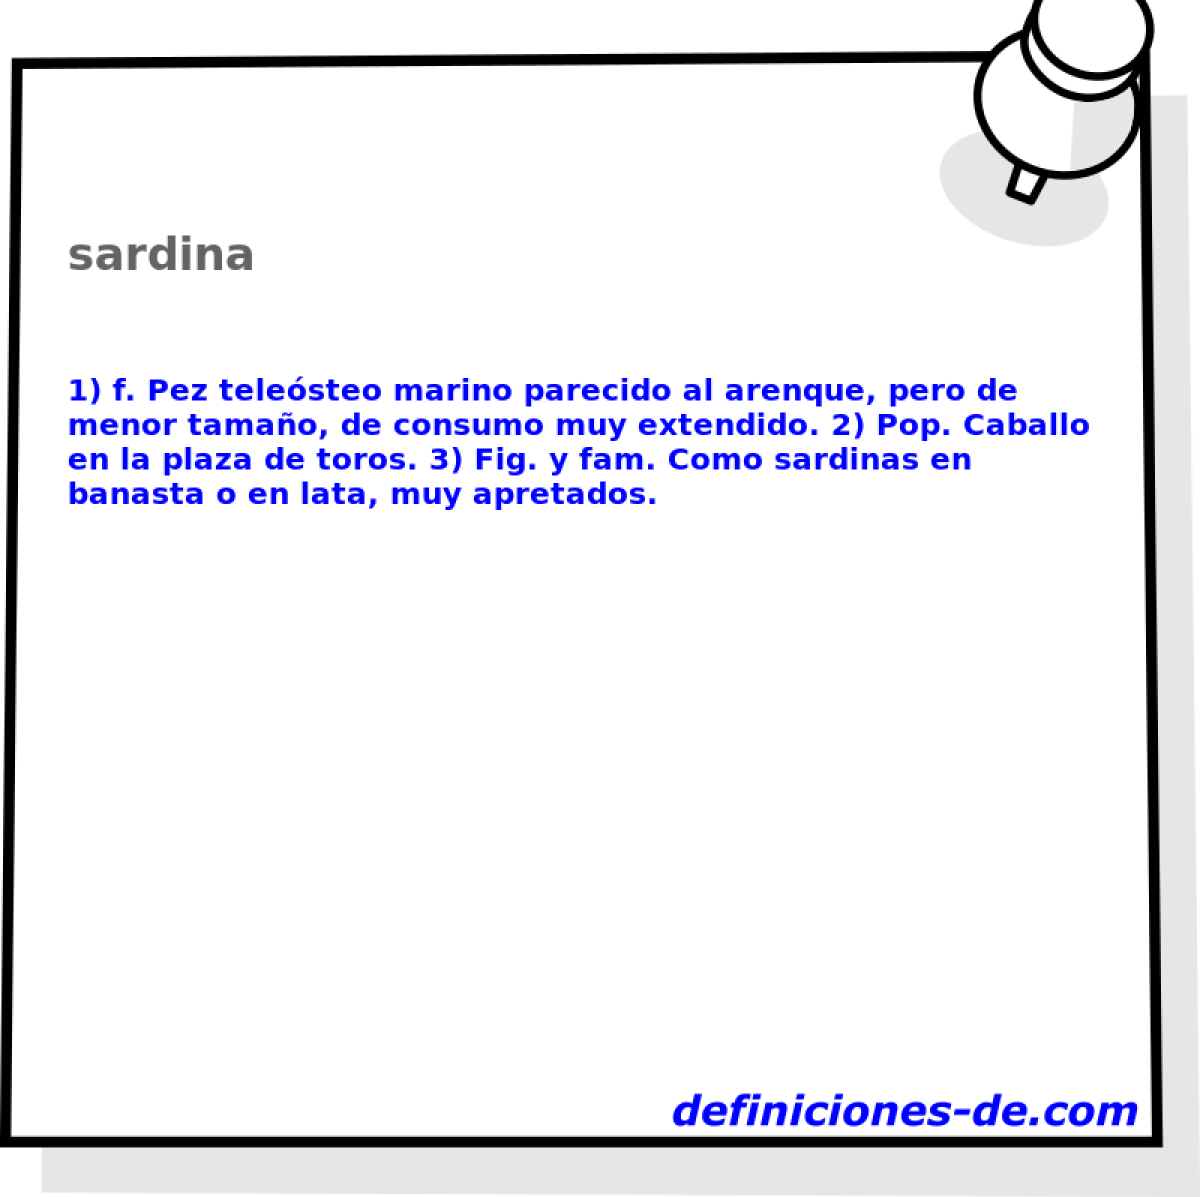 sardina 